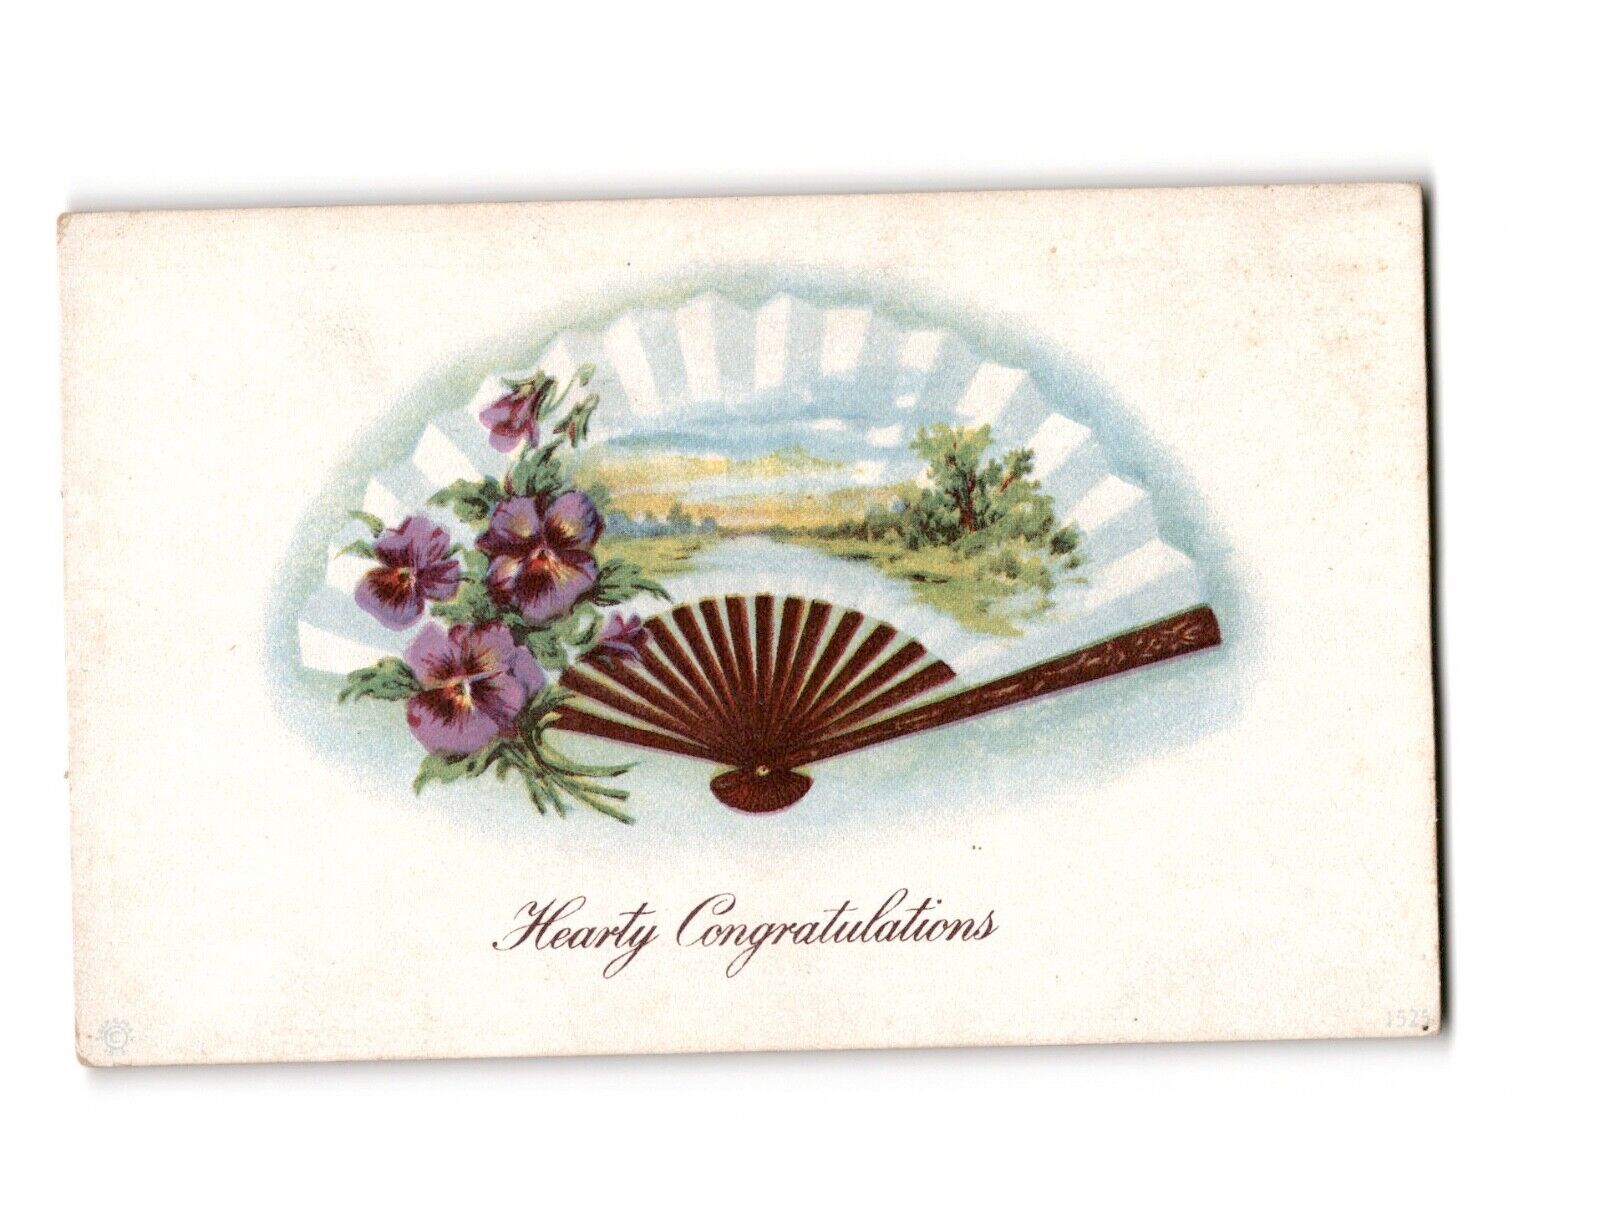 Hearty Congratulations Vintage Postcard